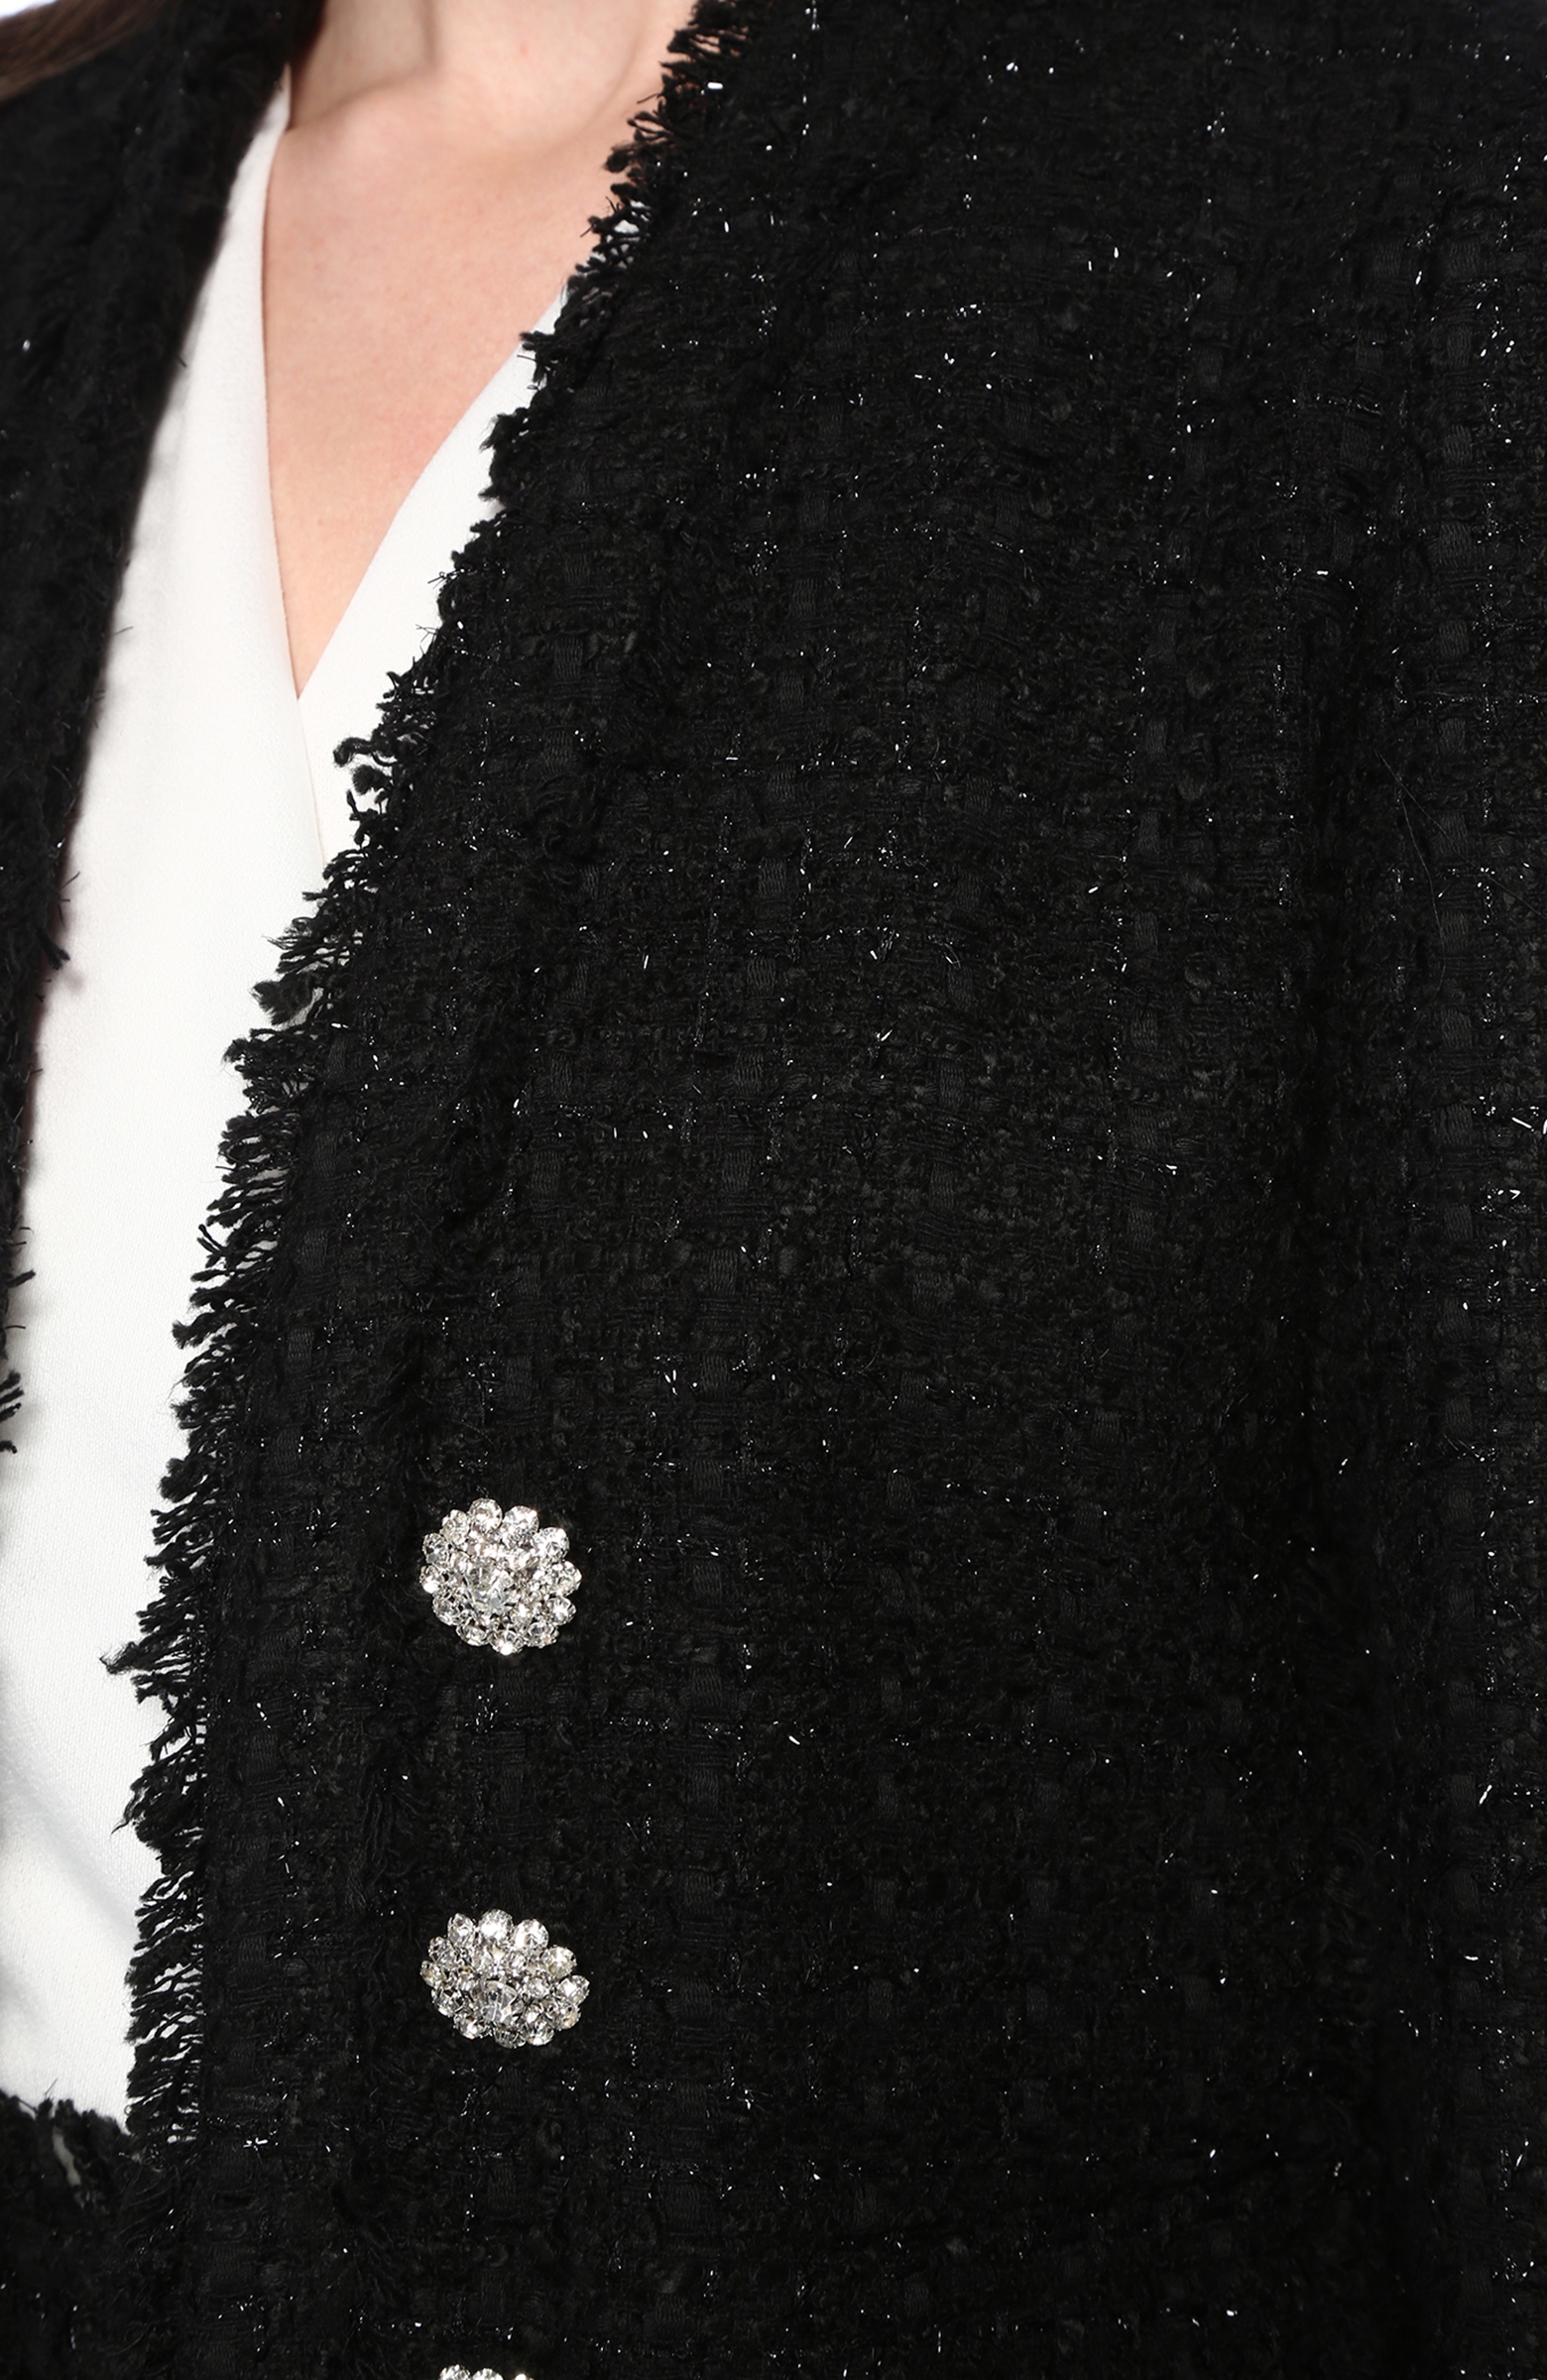 Siyah Şal Yaka Tweed Ceket